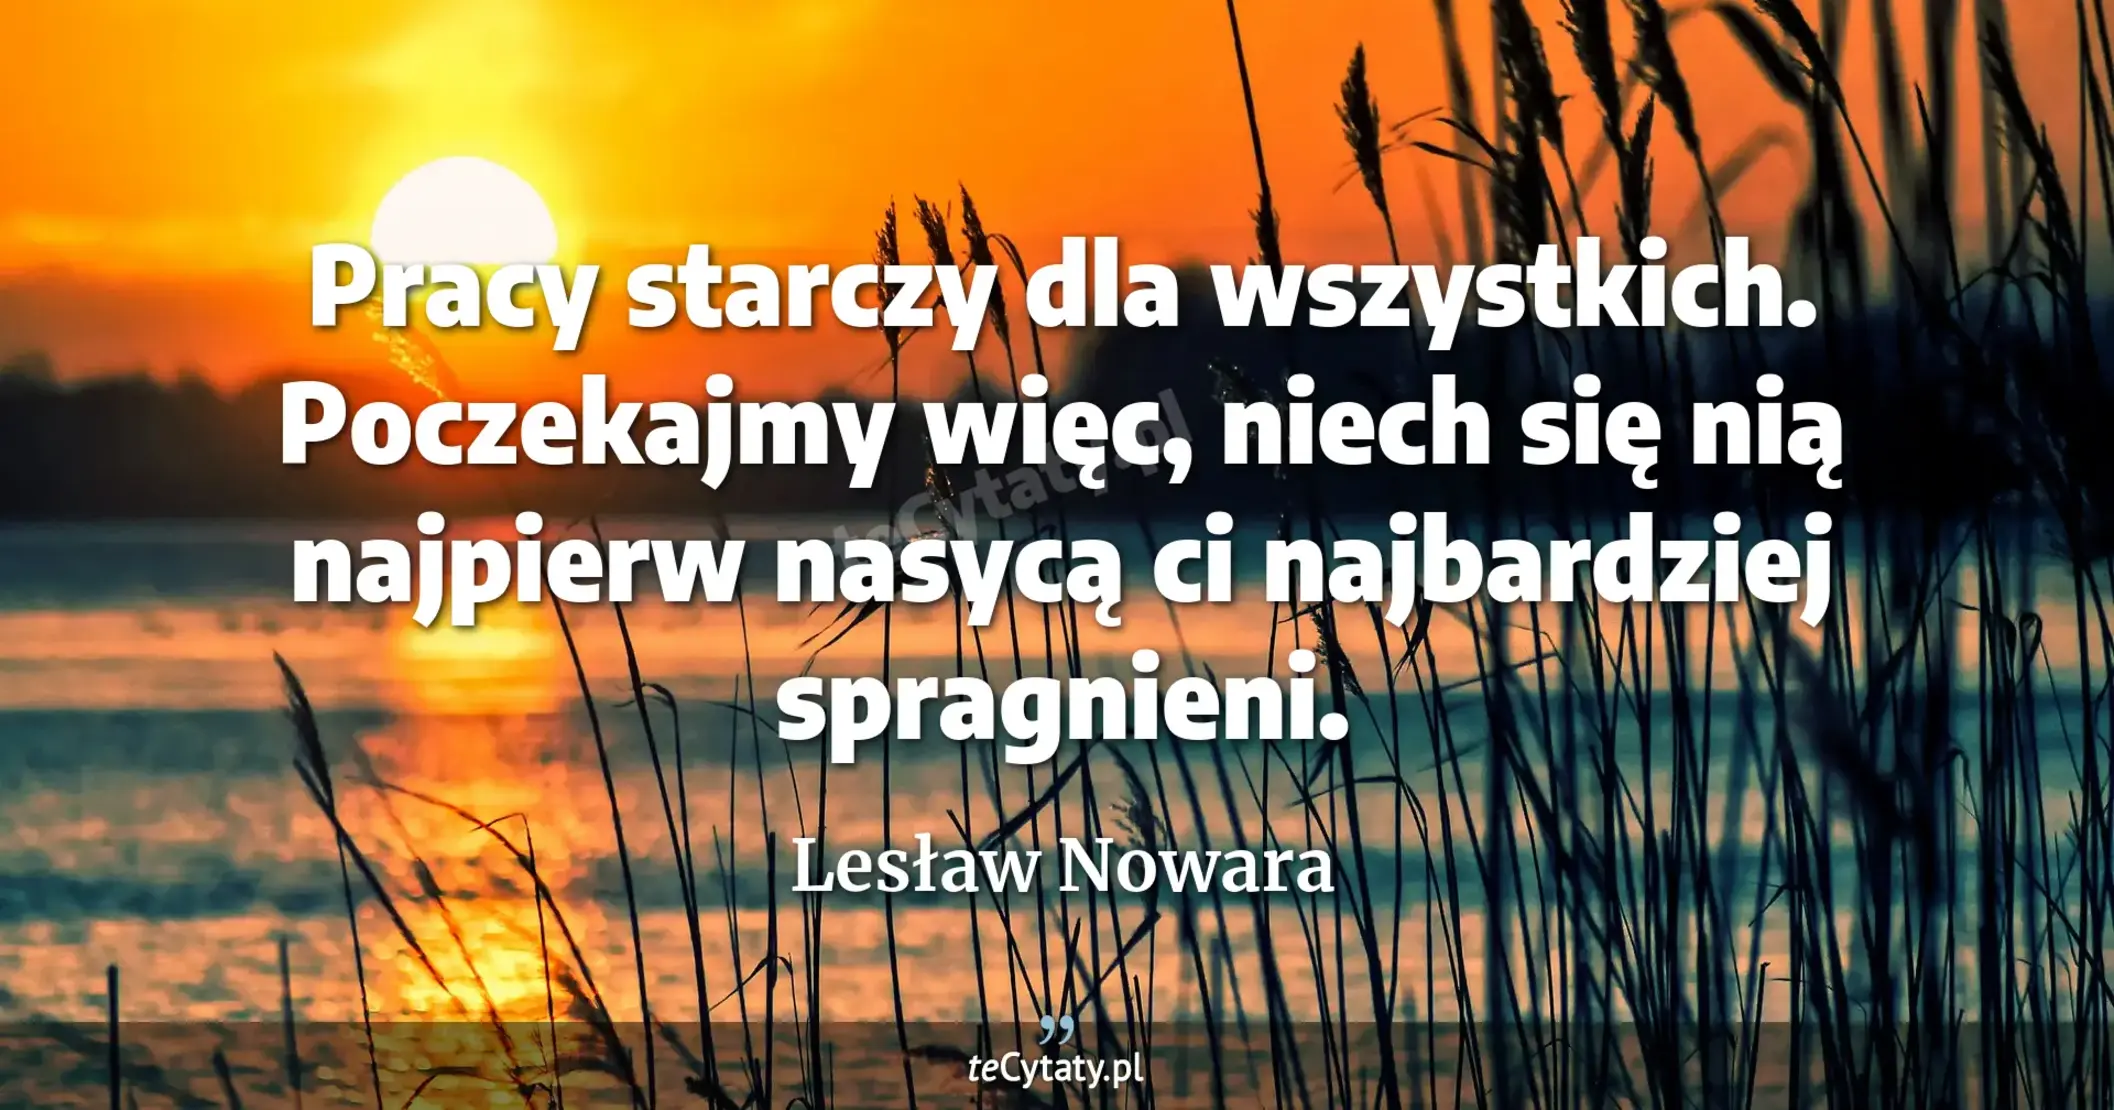 Pracy starczy dla wszystkich. Poczekajmy więc, niech się nią najpierw nasycą ci najbardziej spragnieni. - Lesław Nowara